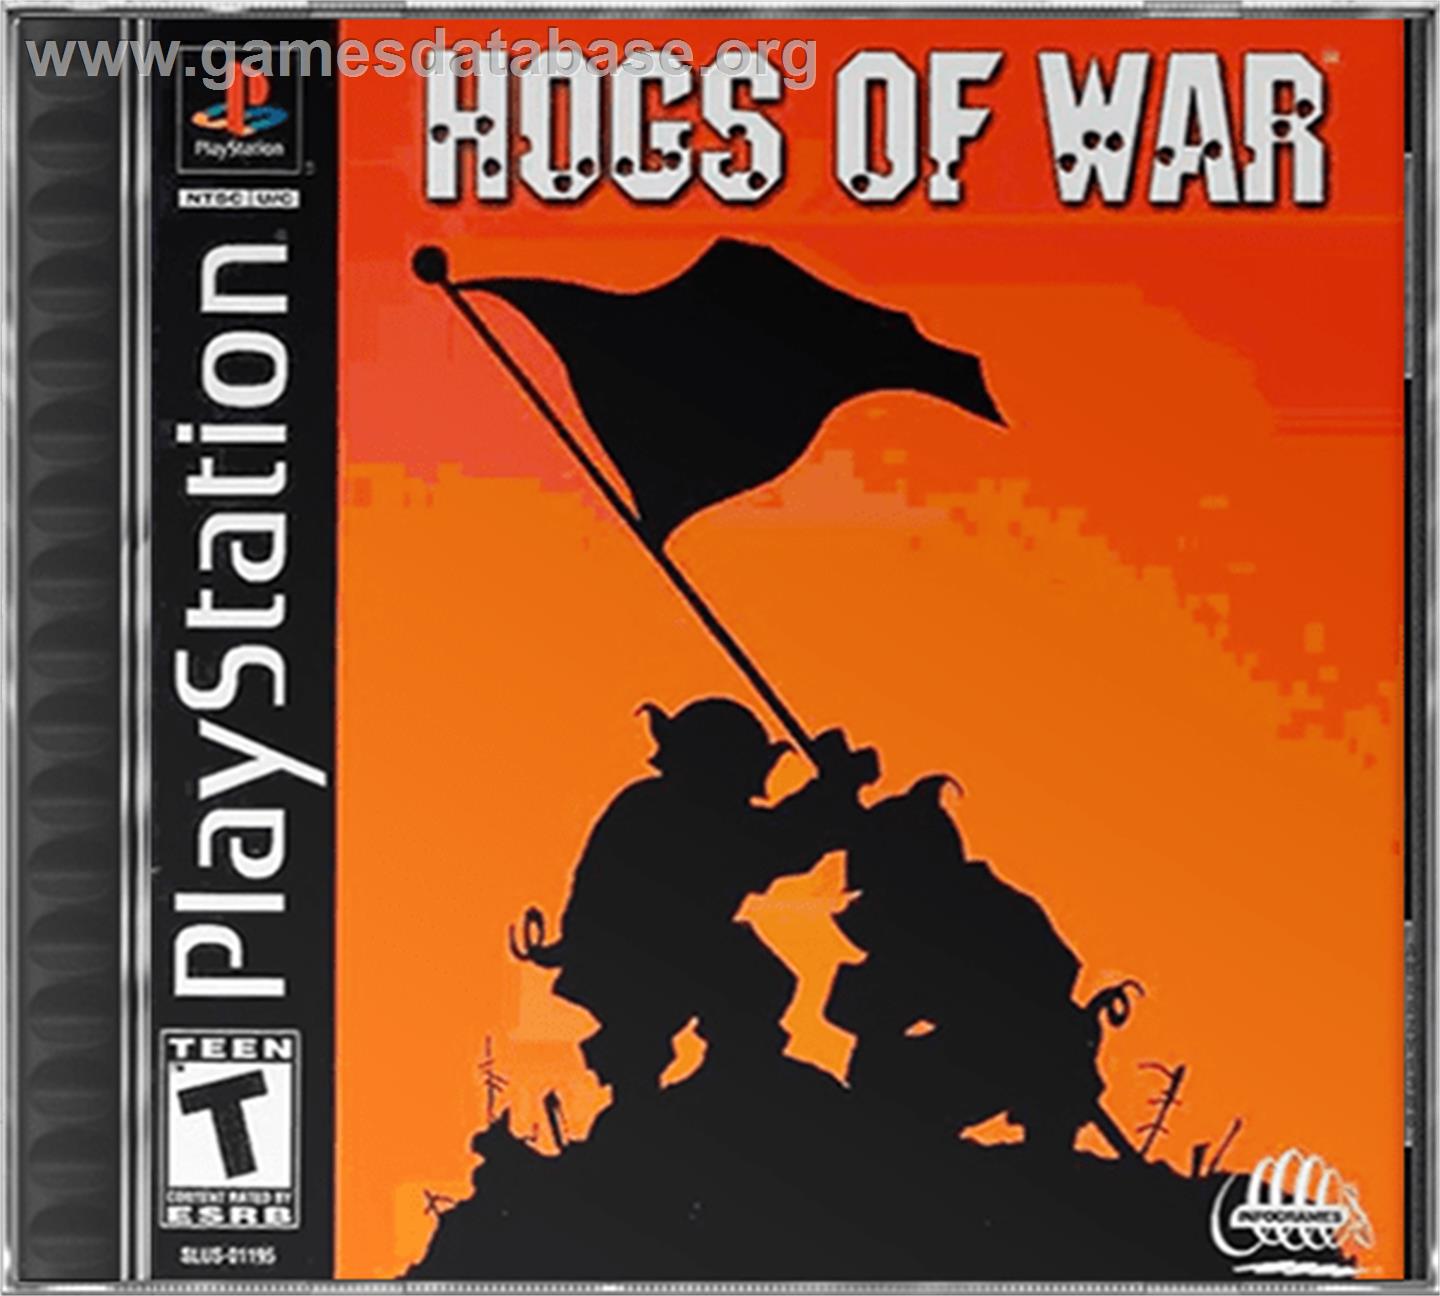 Hogs of War - Sony Playstation - Artwork - Box